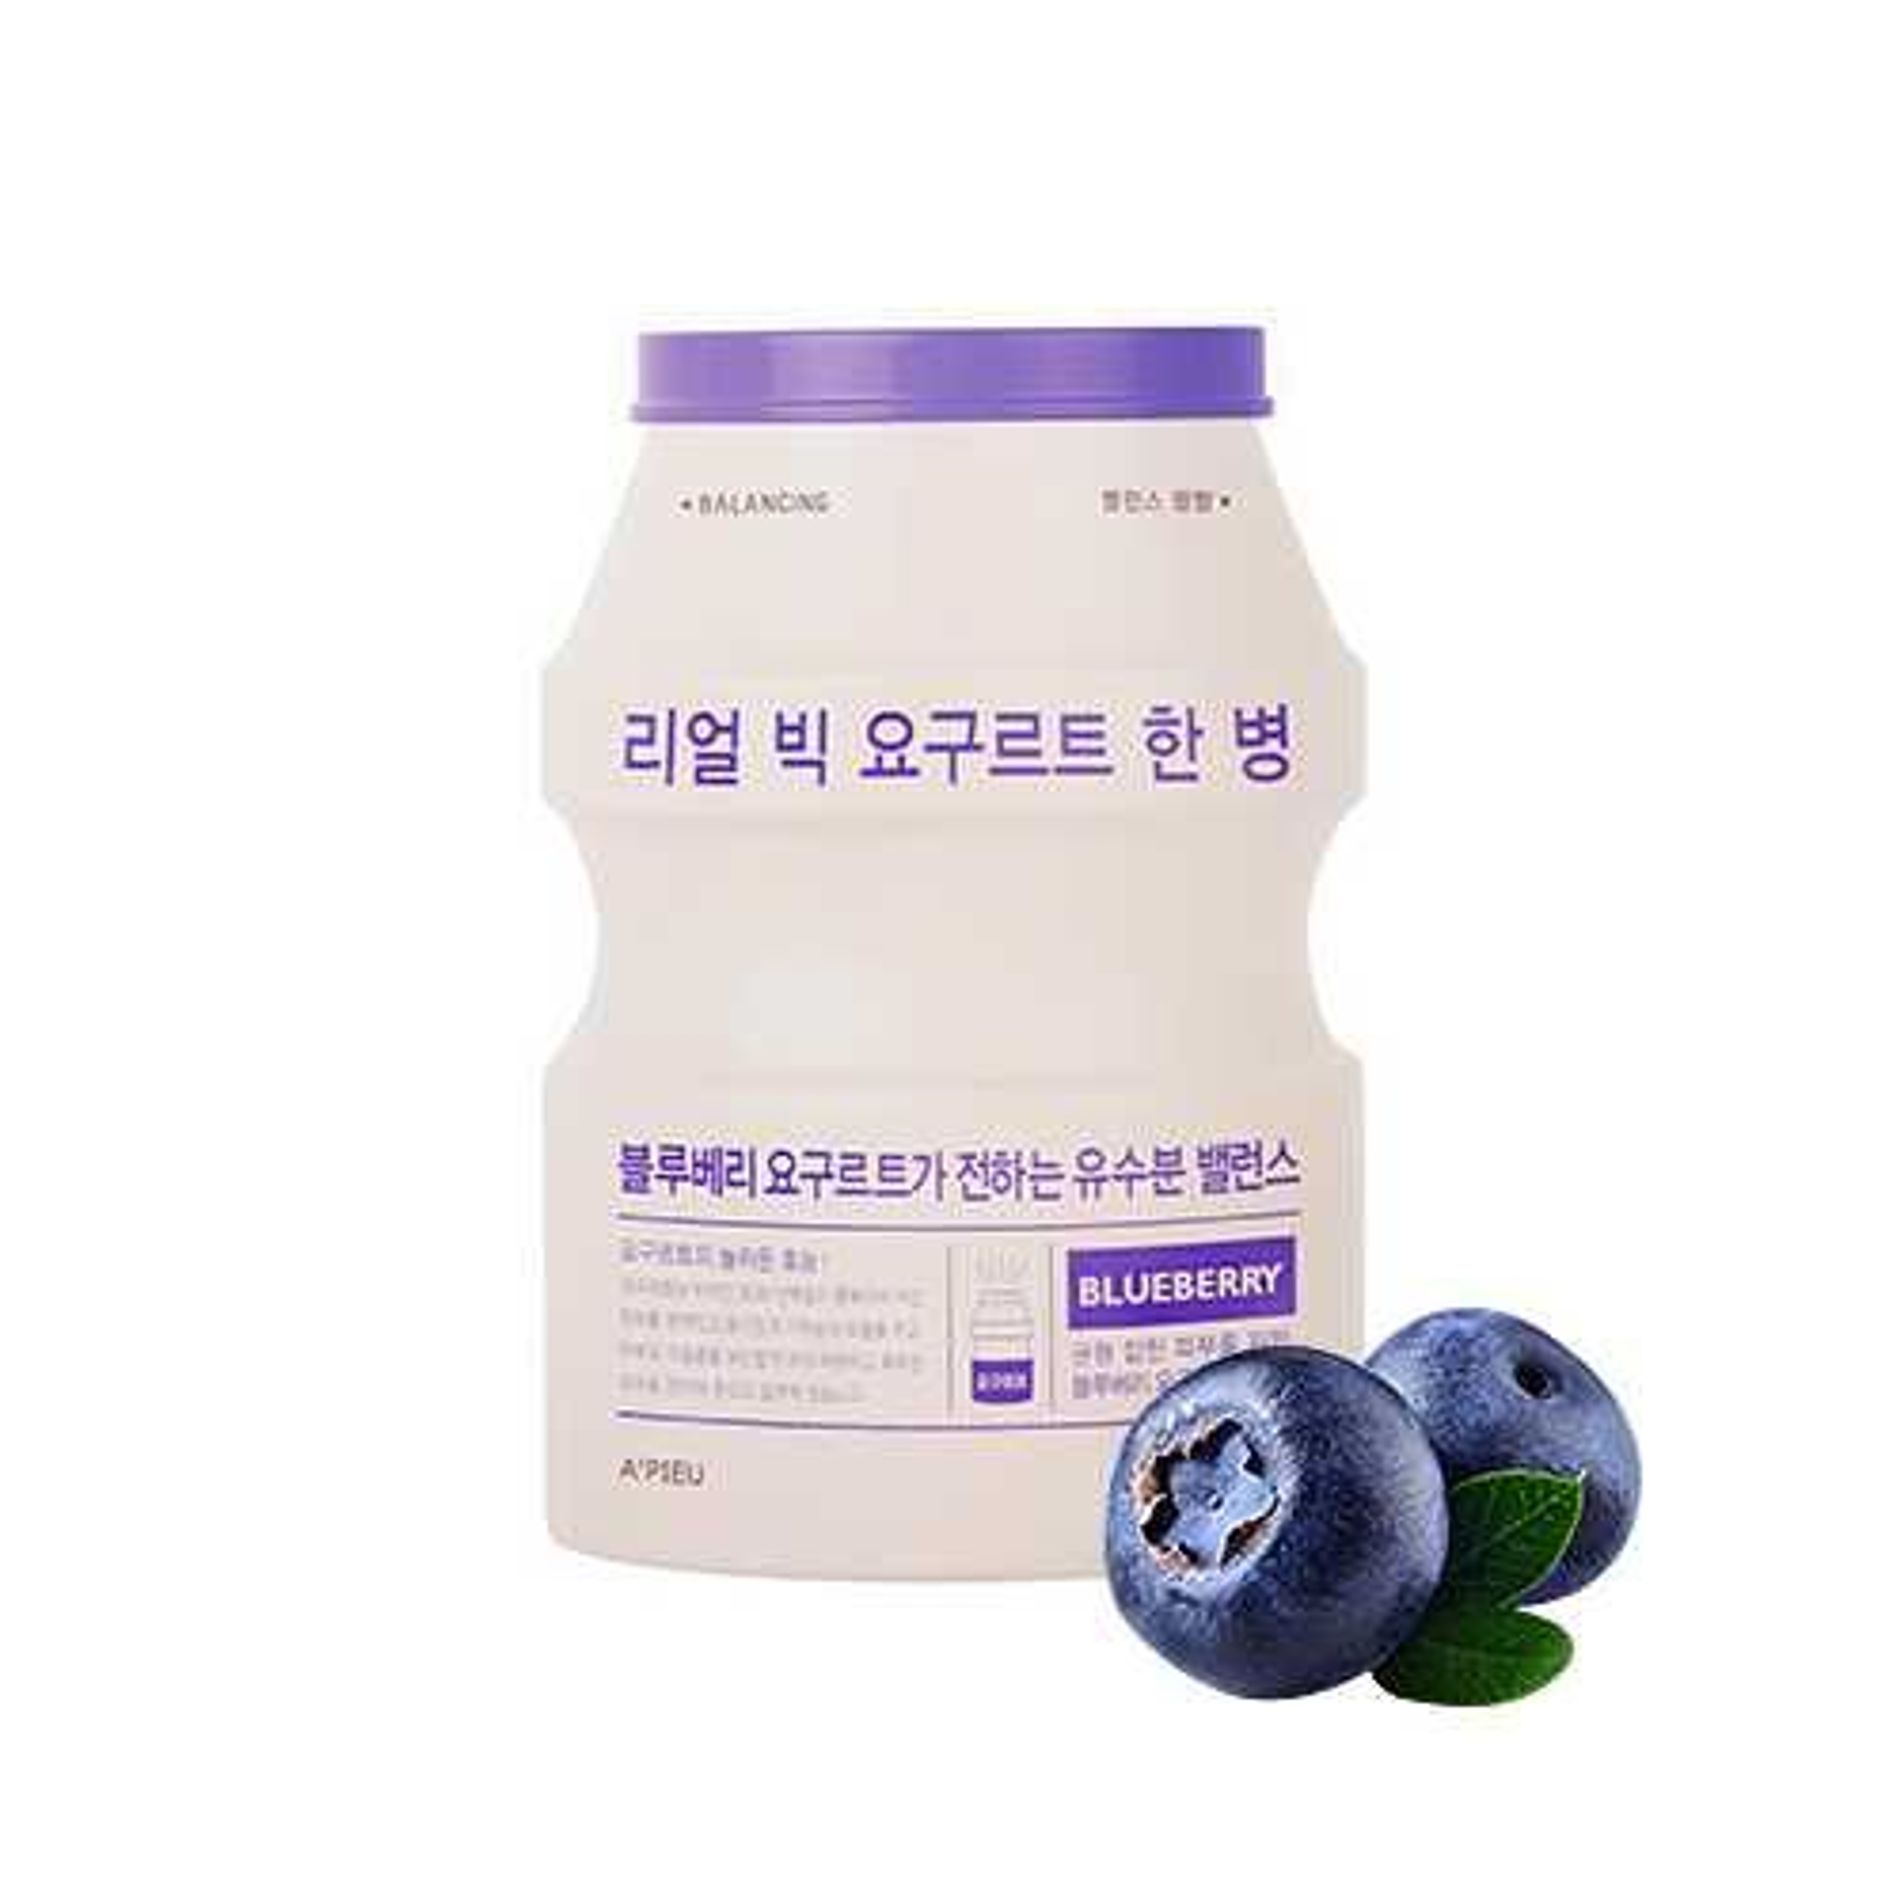 mat-na-giay-lam-san-chac-da-a-pieu-real-big-yogurt-one-bottle-blueberry-4